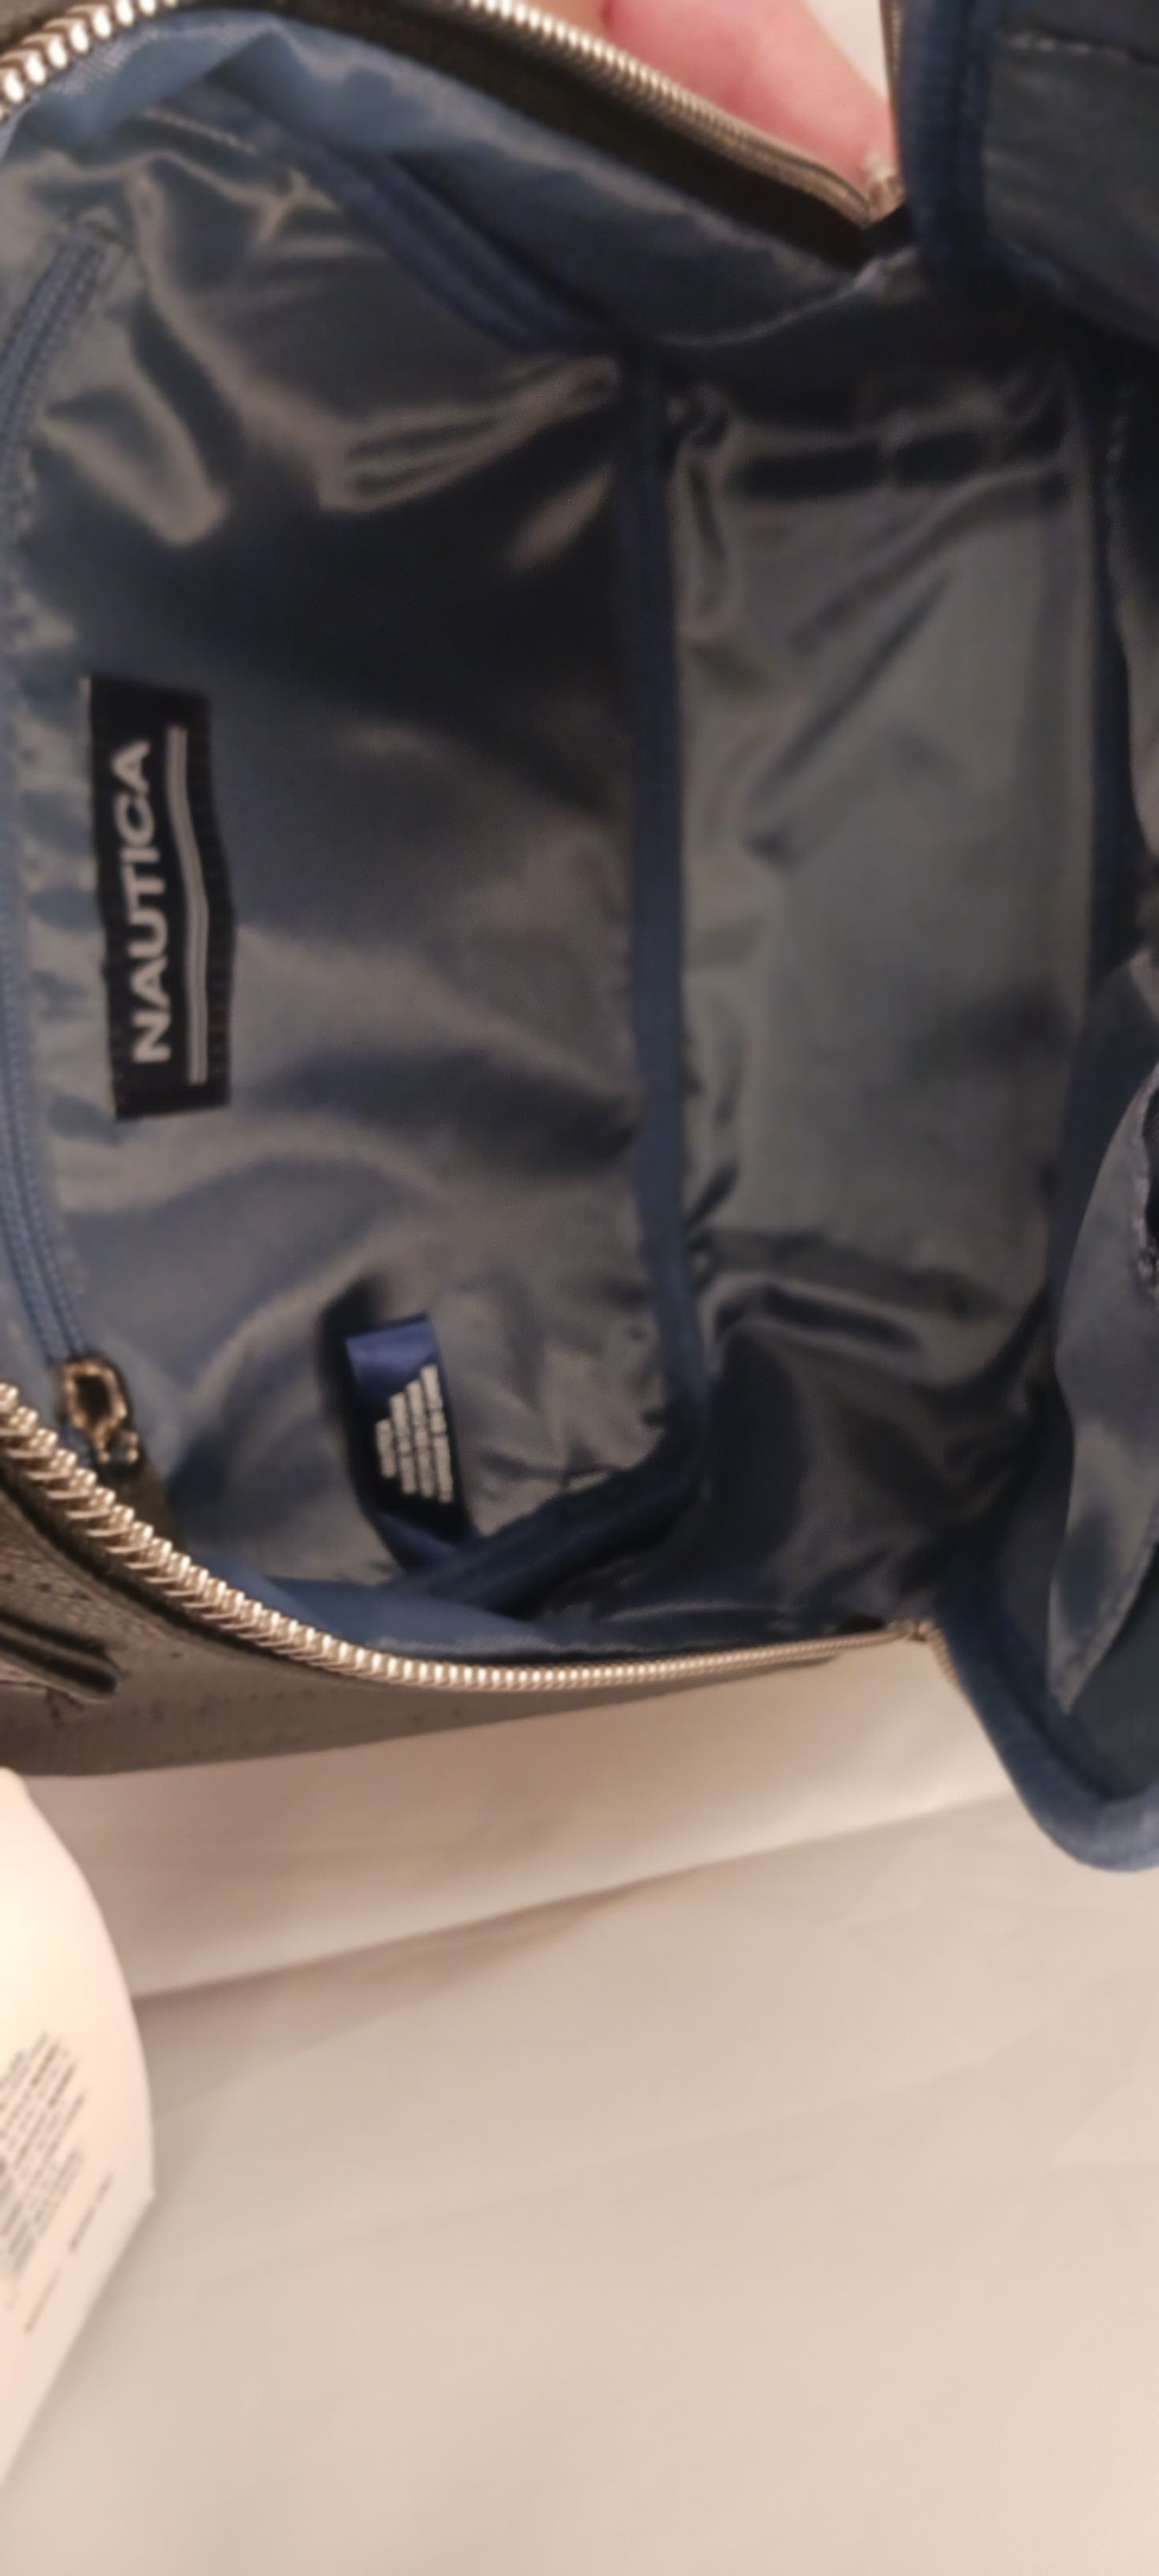 New Nautica black backpack